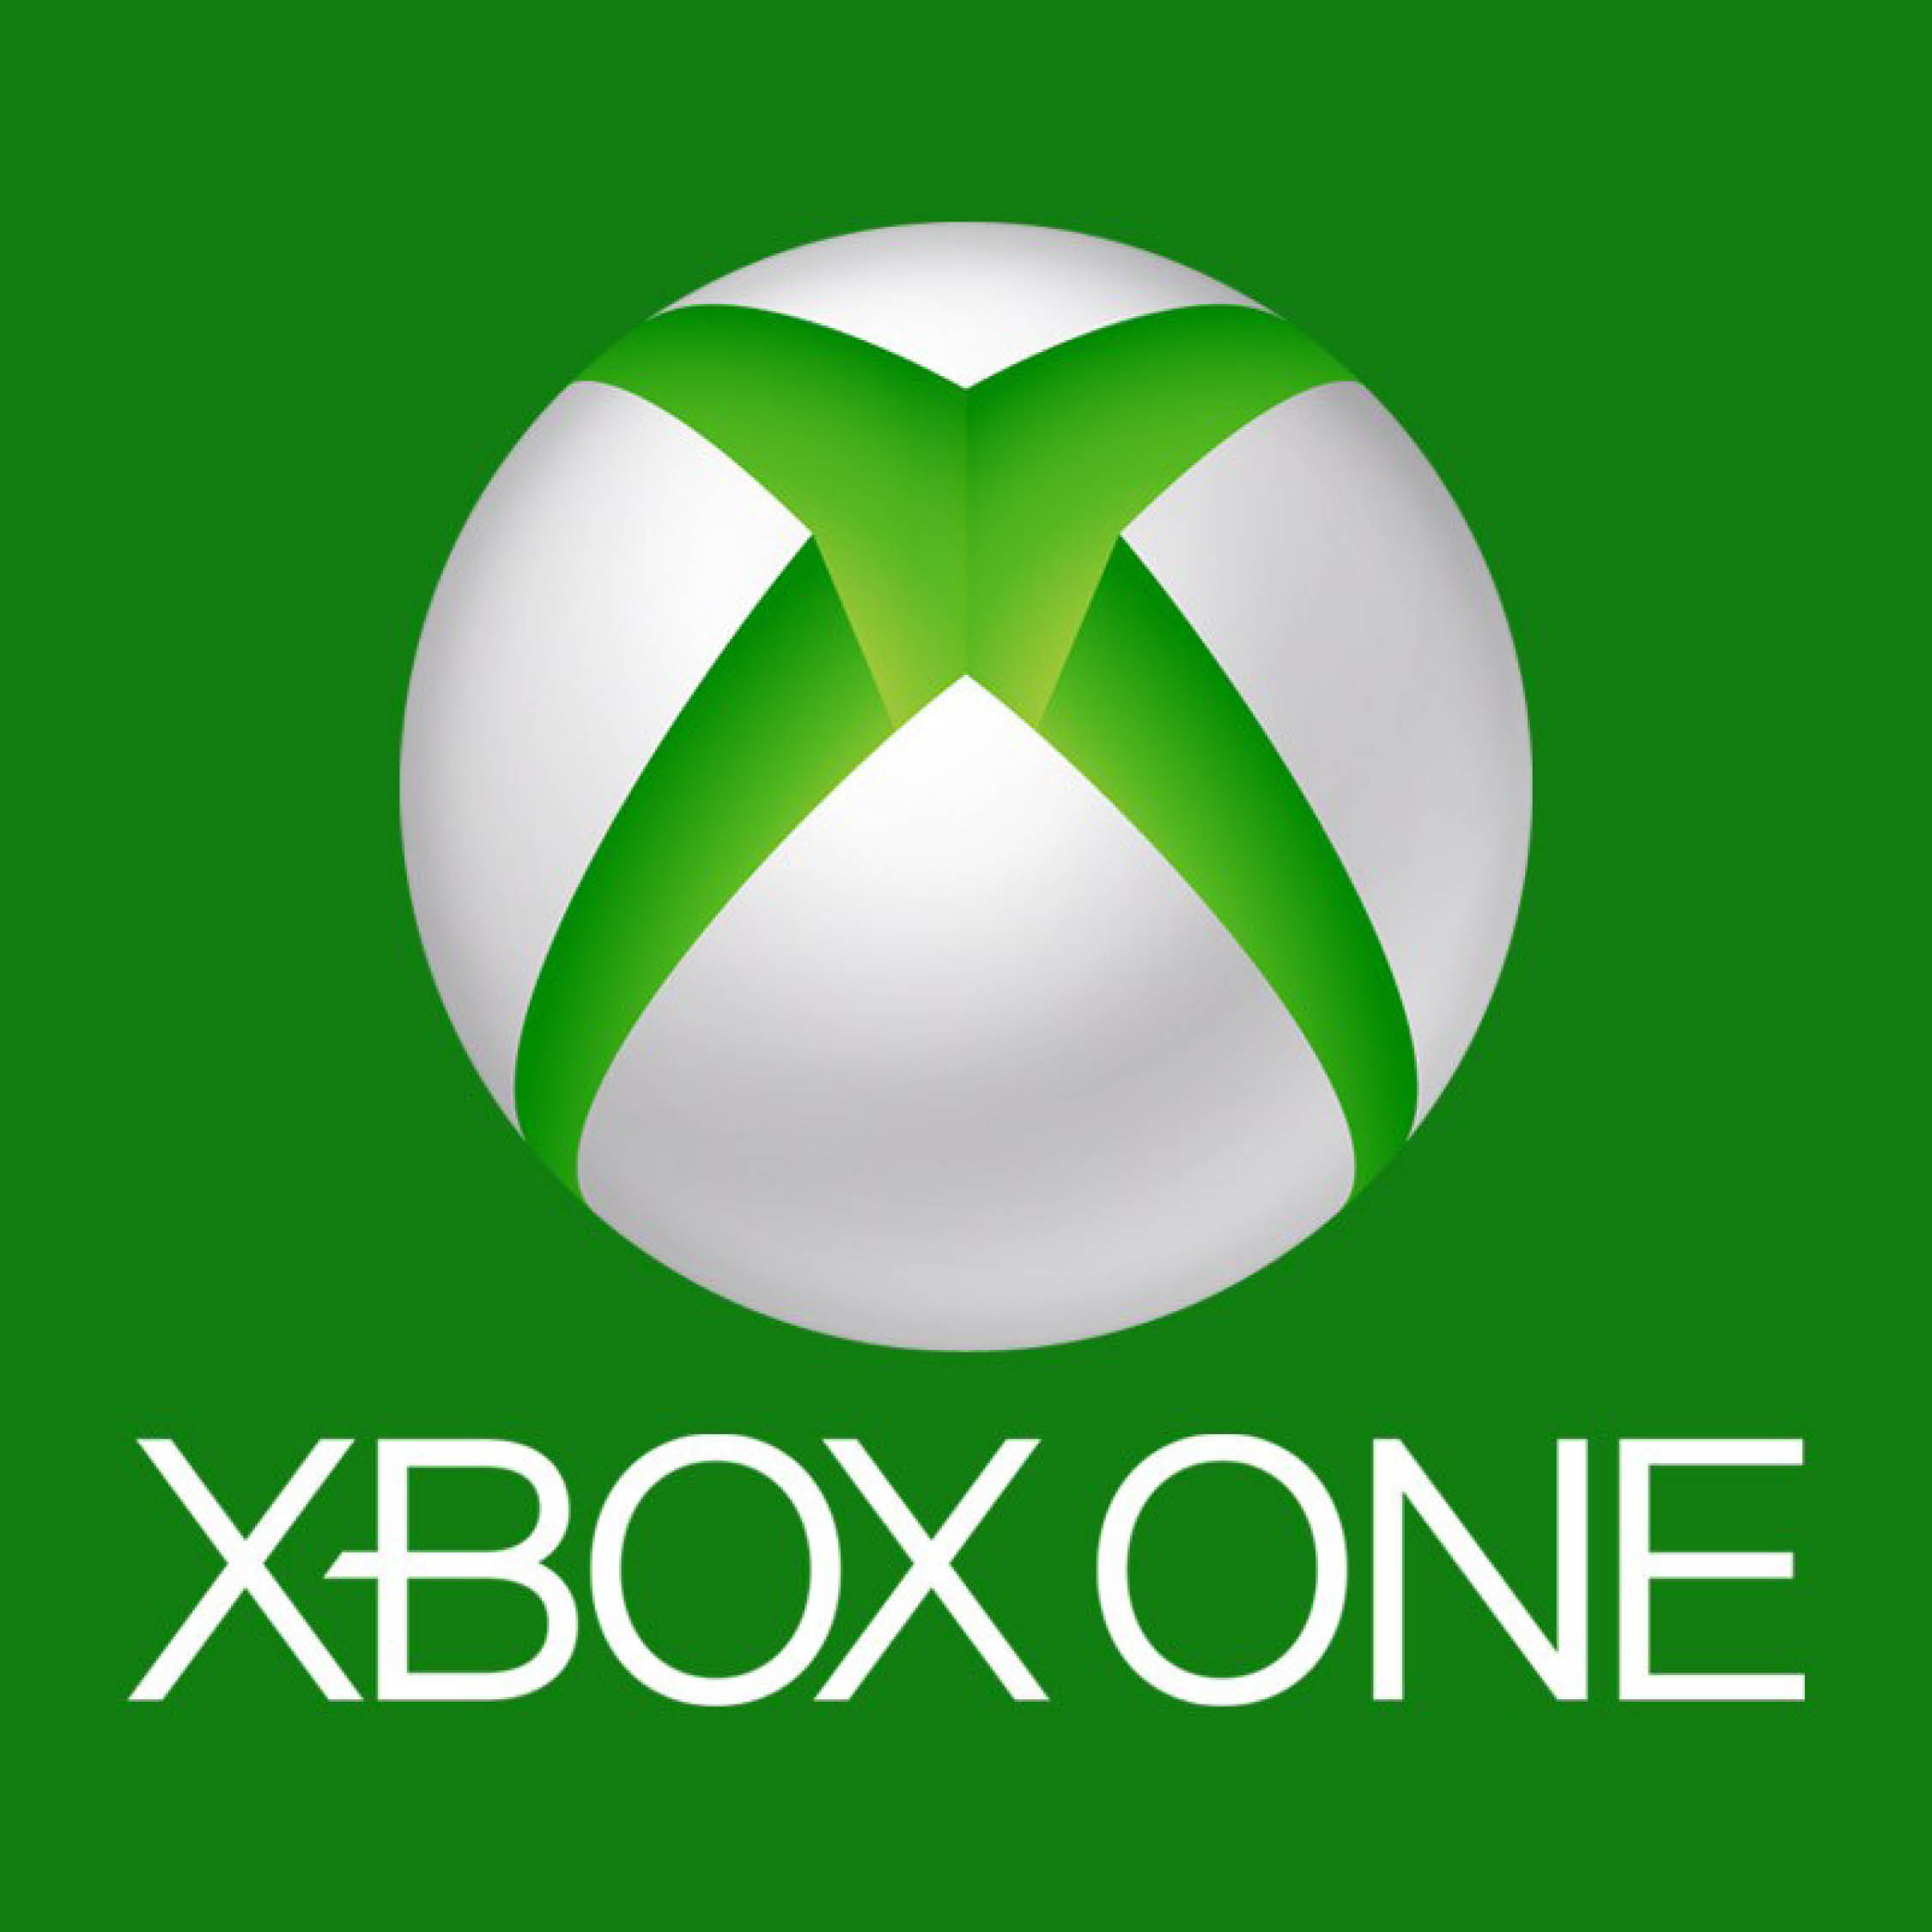 Xbox company. Xbox 360 logo. Логотип Xbox one s. Икс бокс эмблема. Xbox символ.